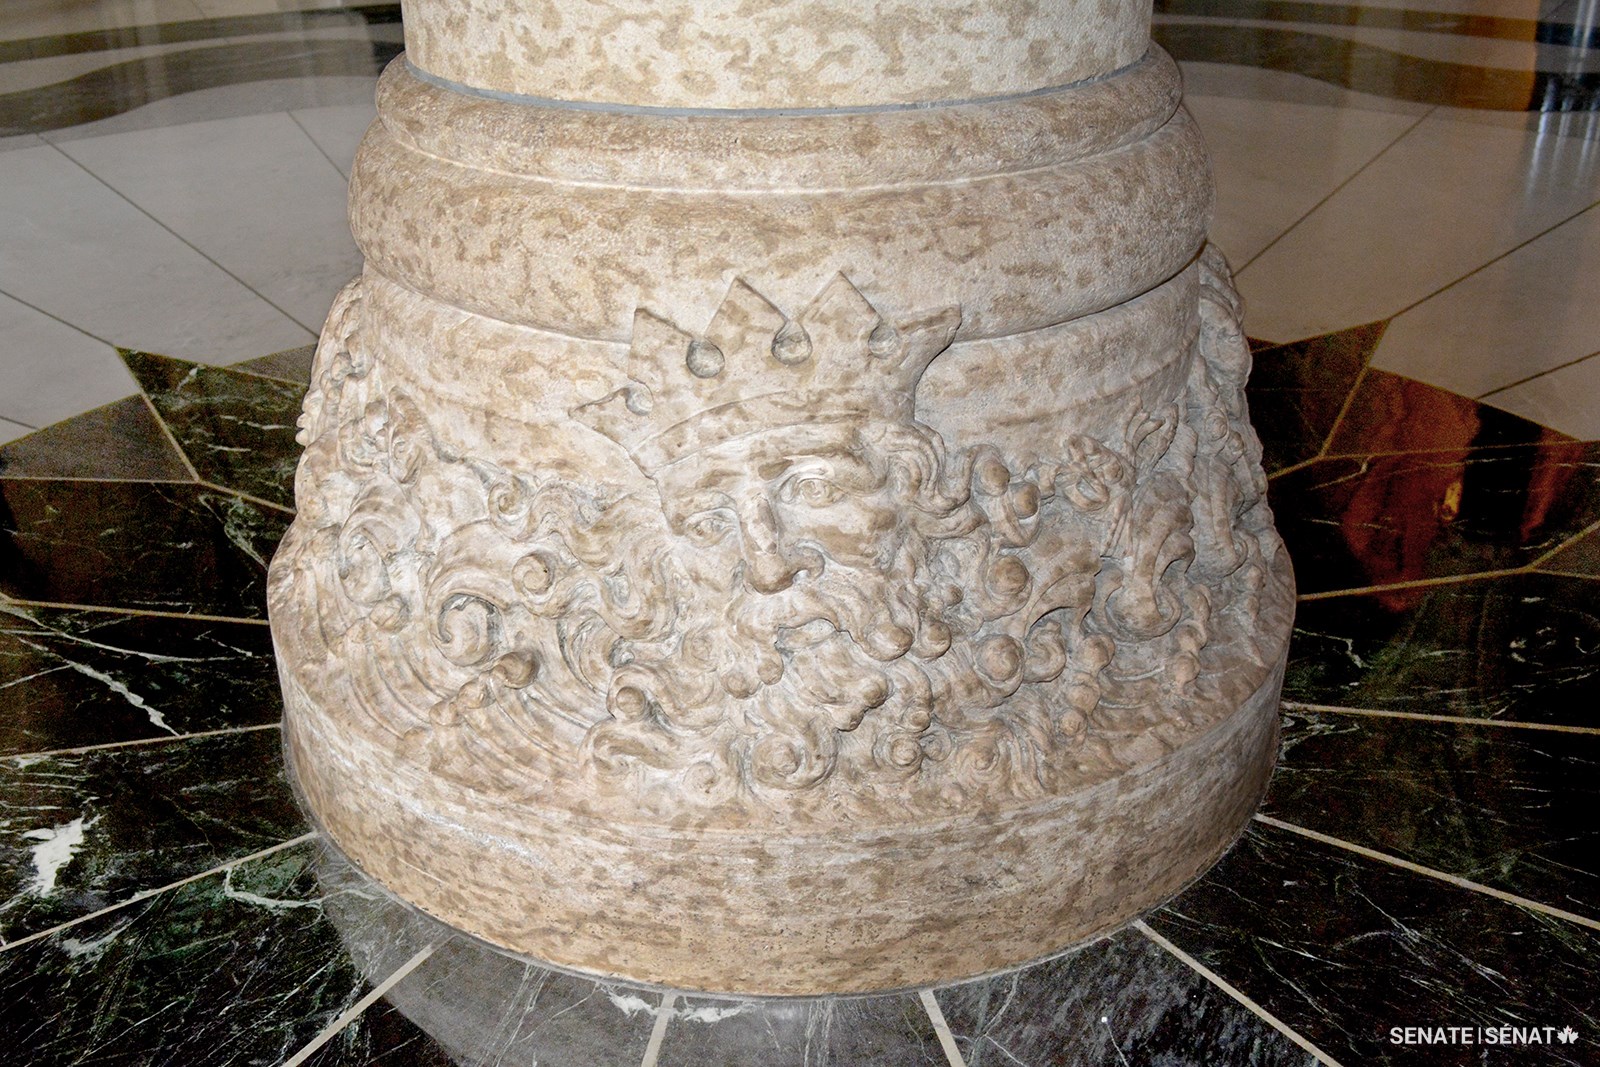 La figure de Poséidon – le dieu grec des mers, des tempêtes et des tremblements de terre – est sculptée dans la colonne centrale de la rotonde.